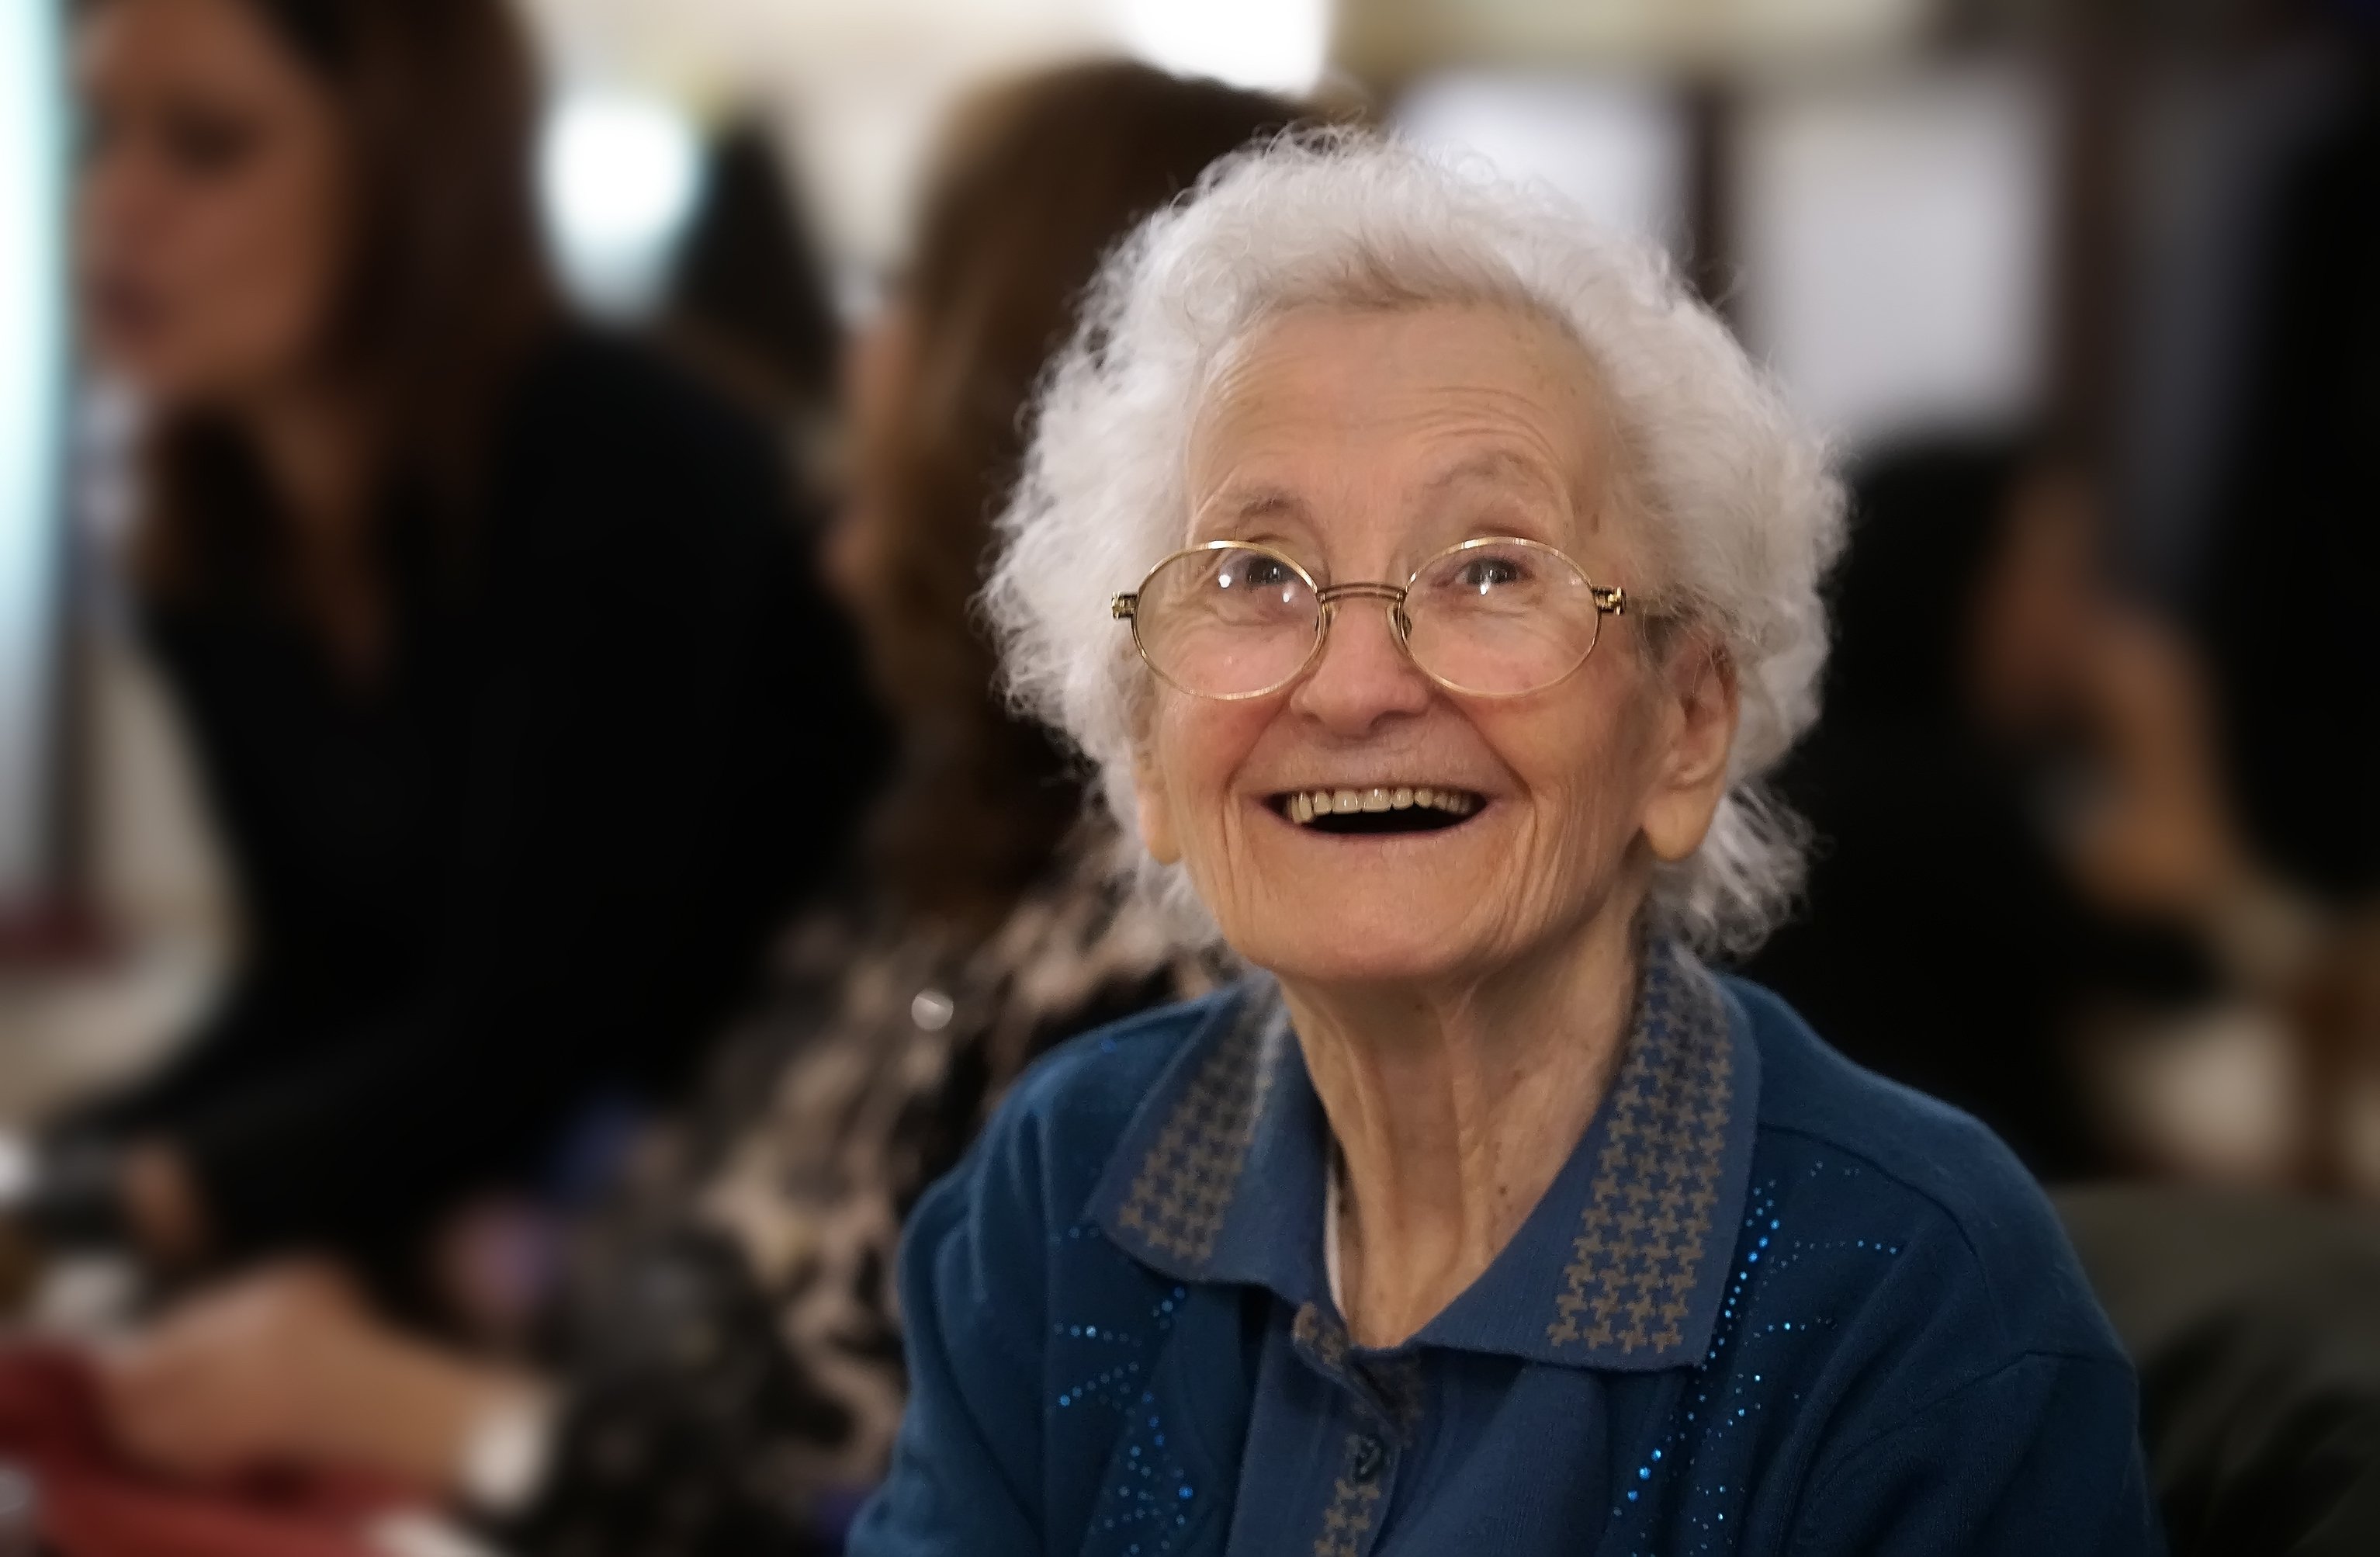 Portrait d'une vieille dame heureuse souriante | Photo : Shutterstock